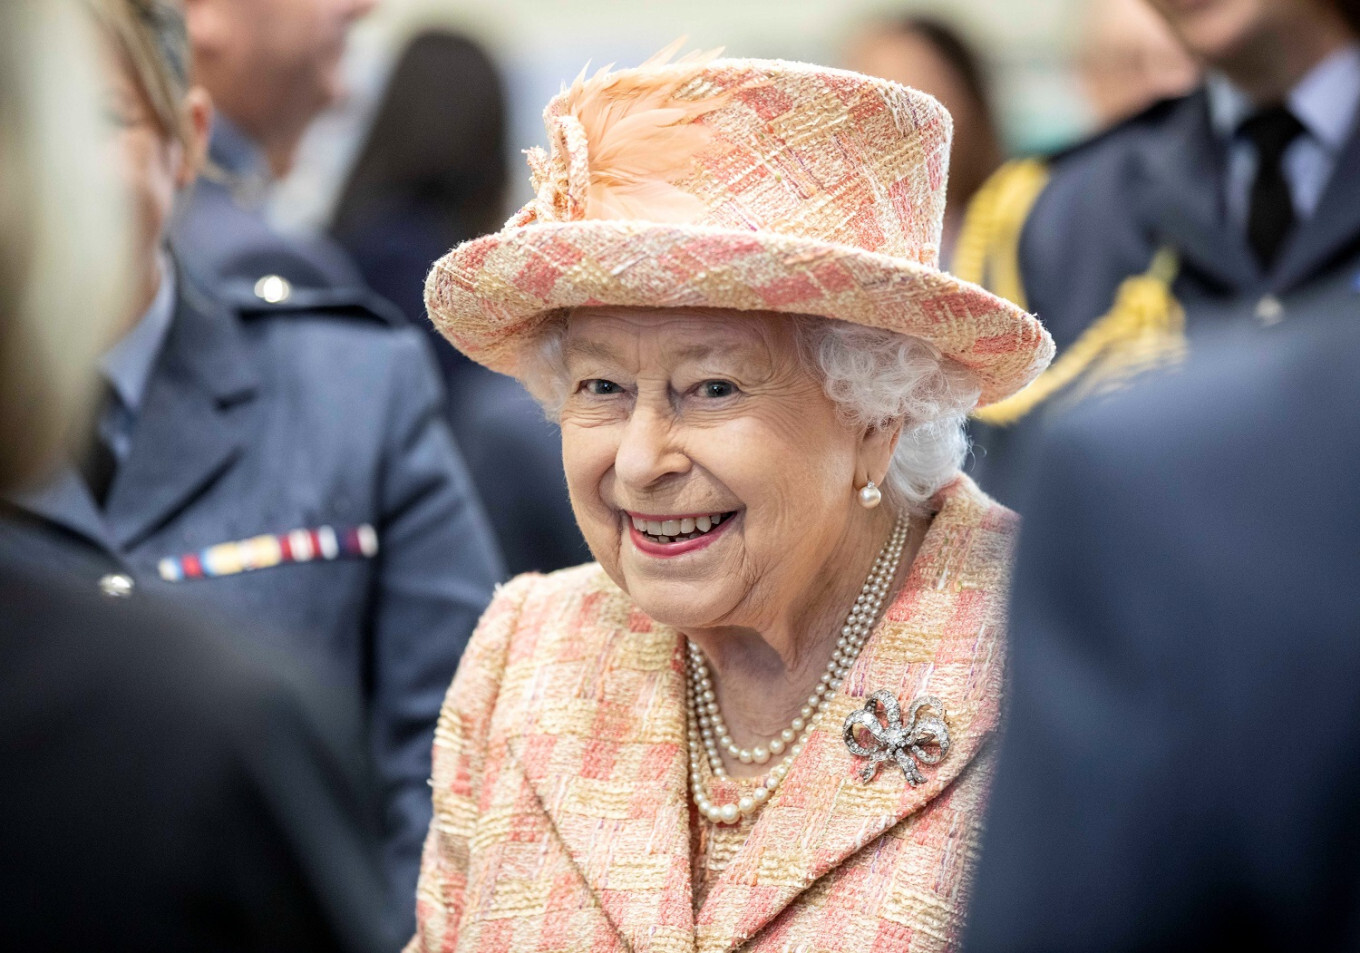 Forbes Royal: Všechno nejlepší, Vaše Veličenstvo! Královna má 94 let, místo oslav pomáhá